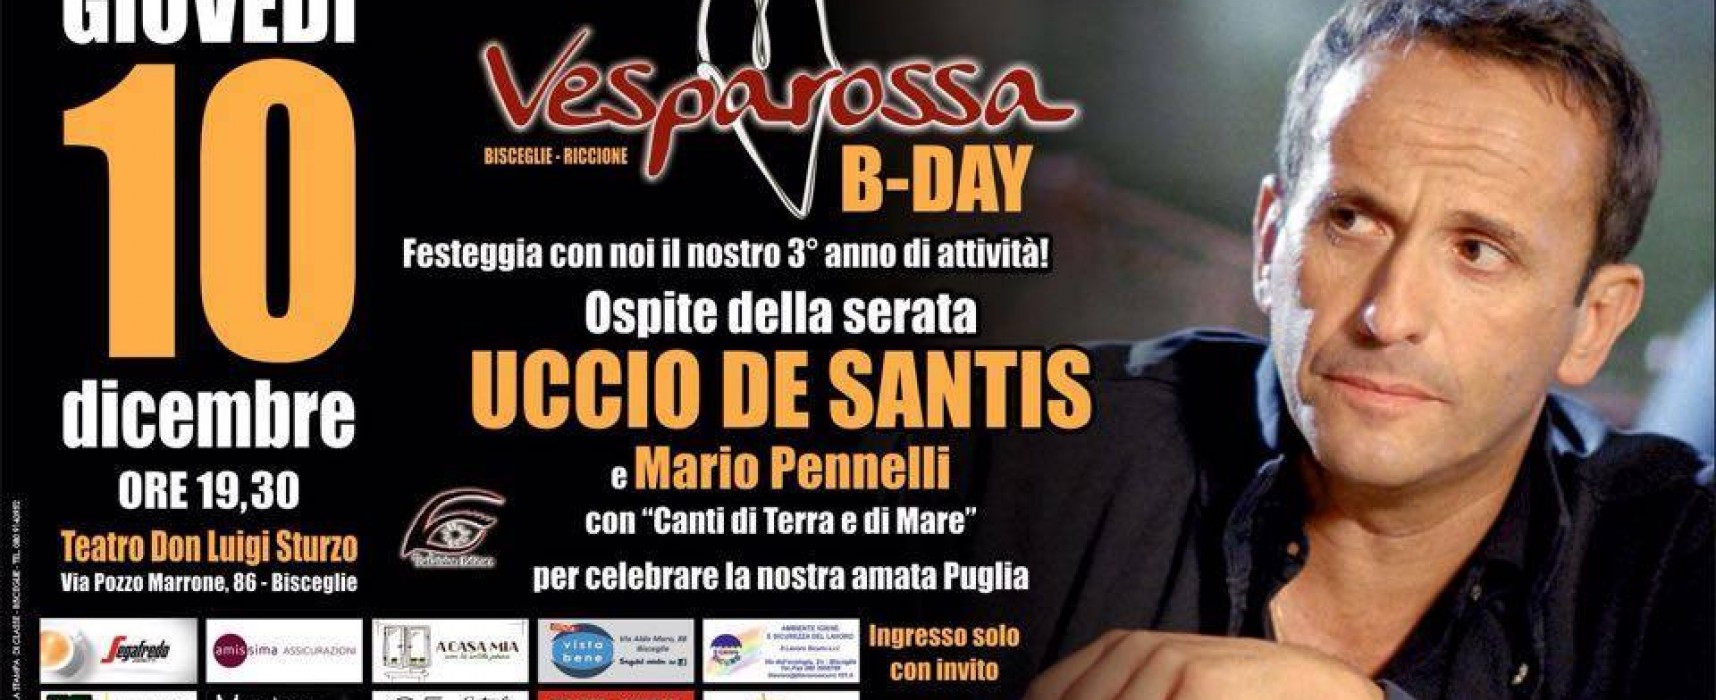 Mario Pennelli ed Uccio De Santis al “Don Sturzo” per festeggiare i tre anni di Vesparossa